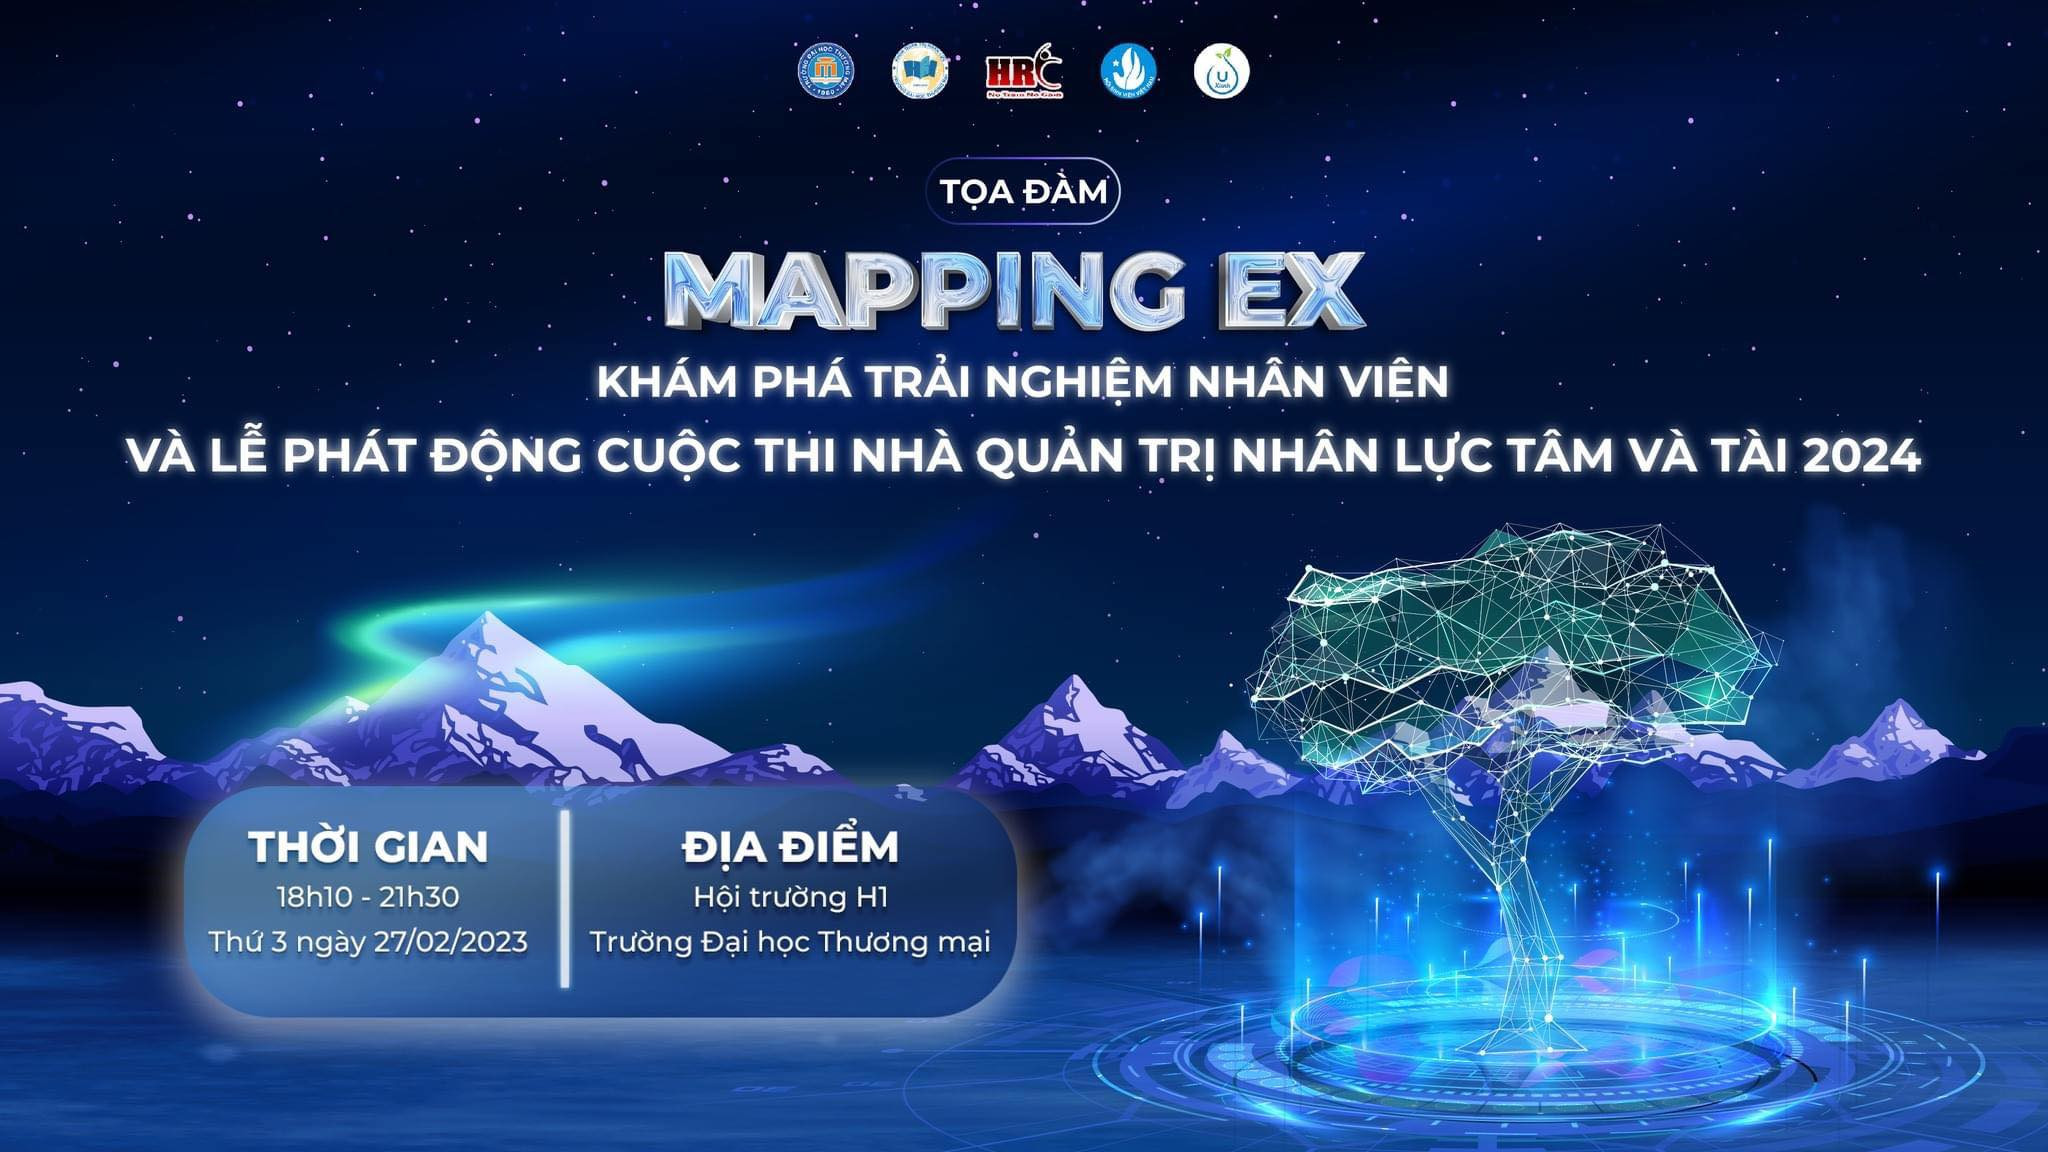 Tọa đàm Mapping EX - Khám phá trải nghiệm nhân viên và Lễ phát động cuộc thi Nhà quản trị nhân lực Tâm và Tài 2024